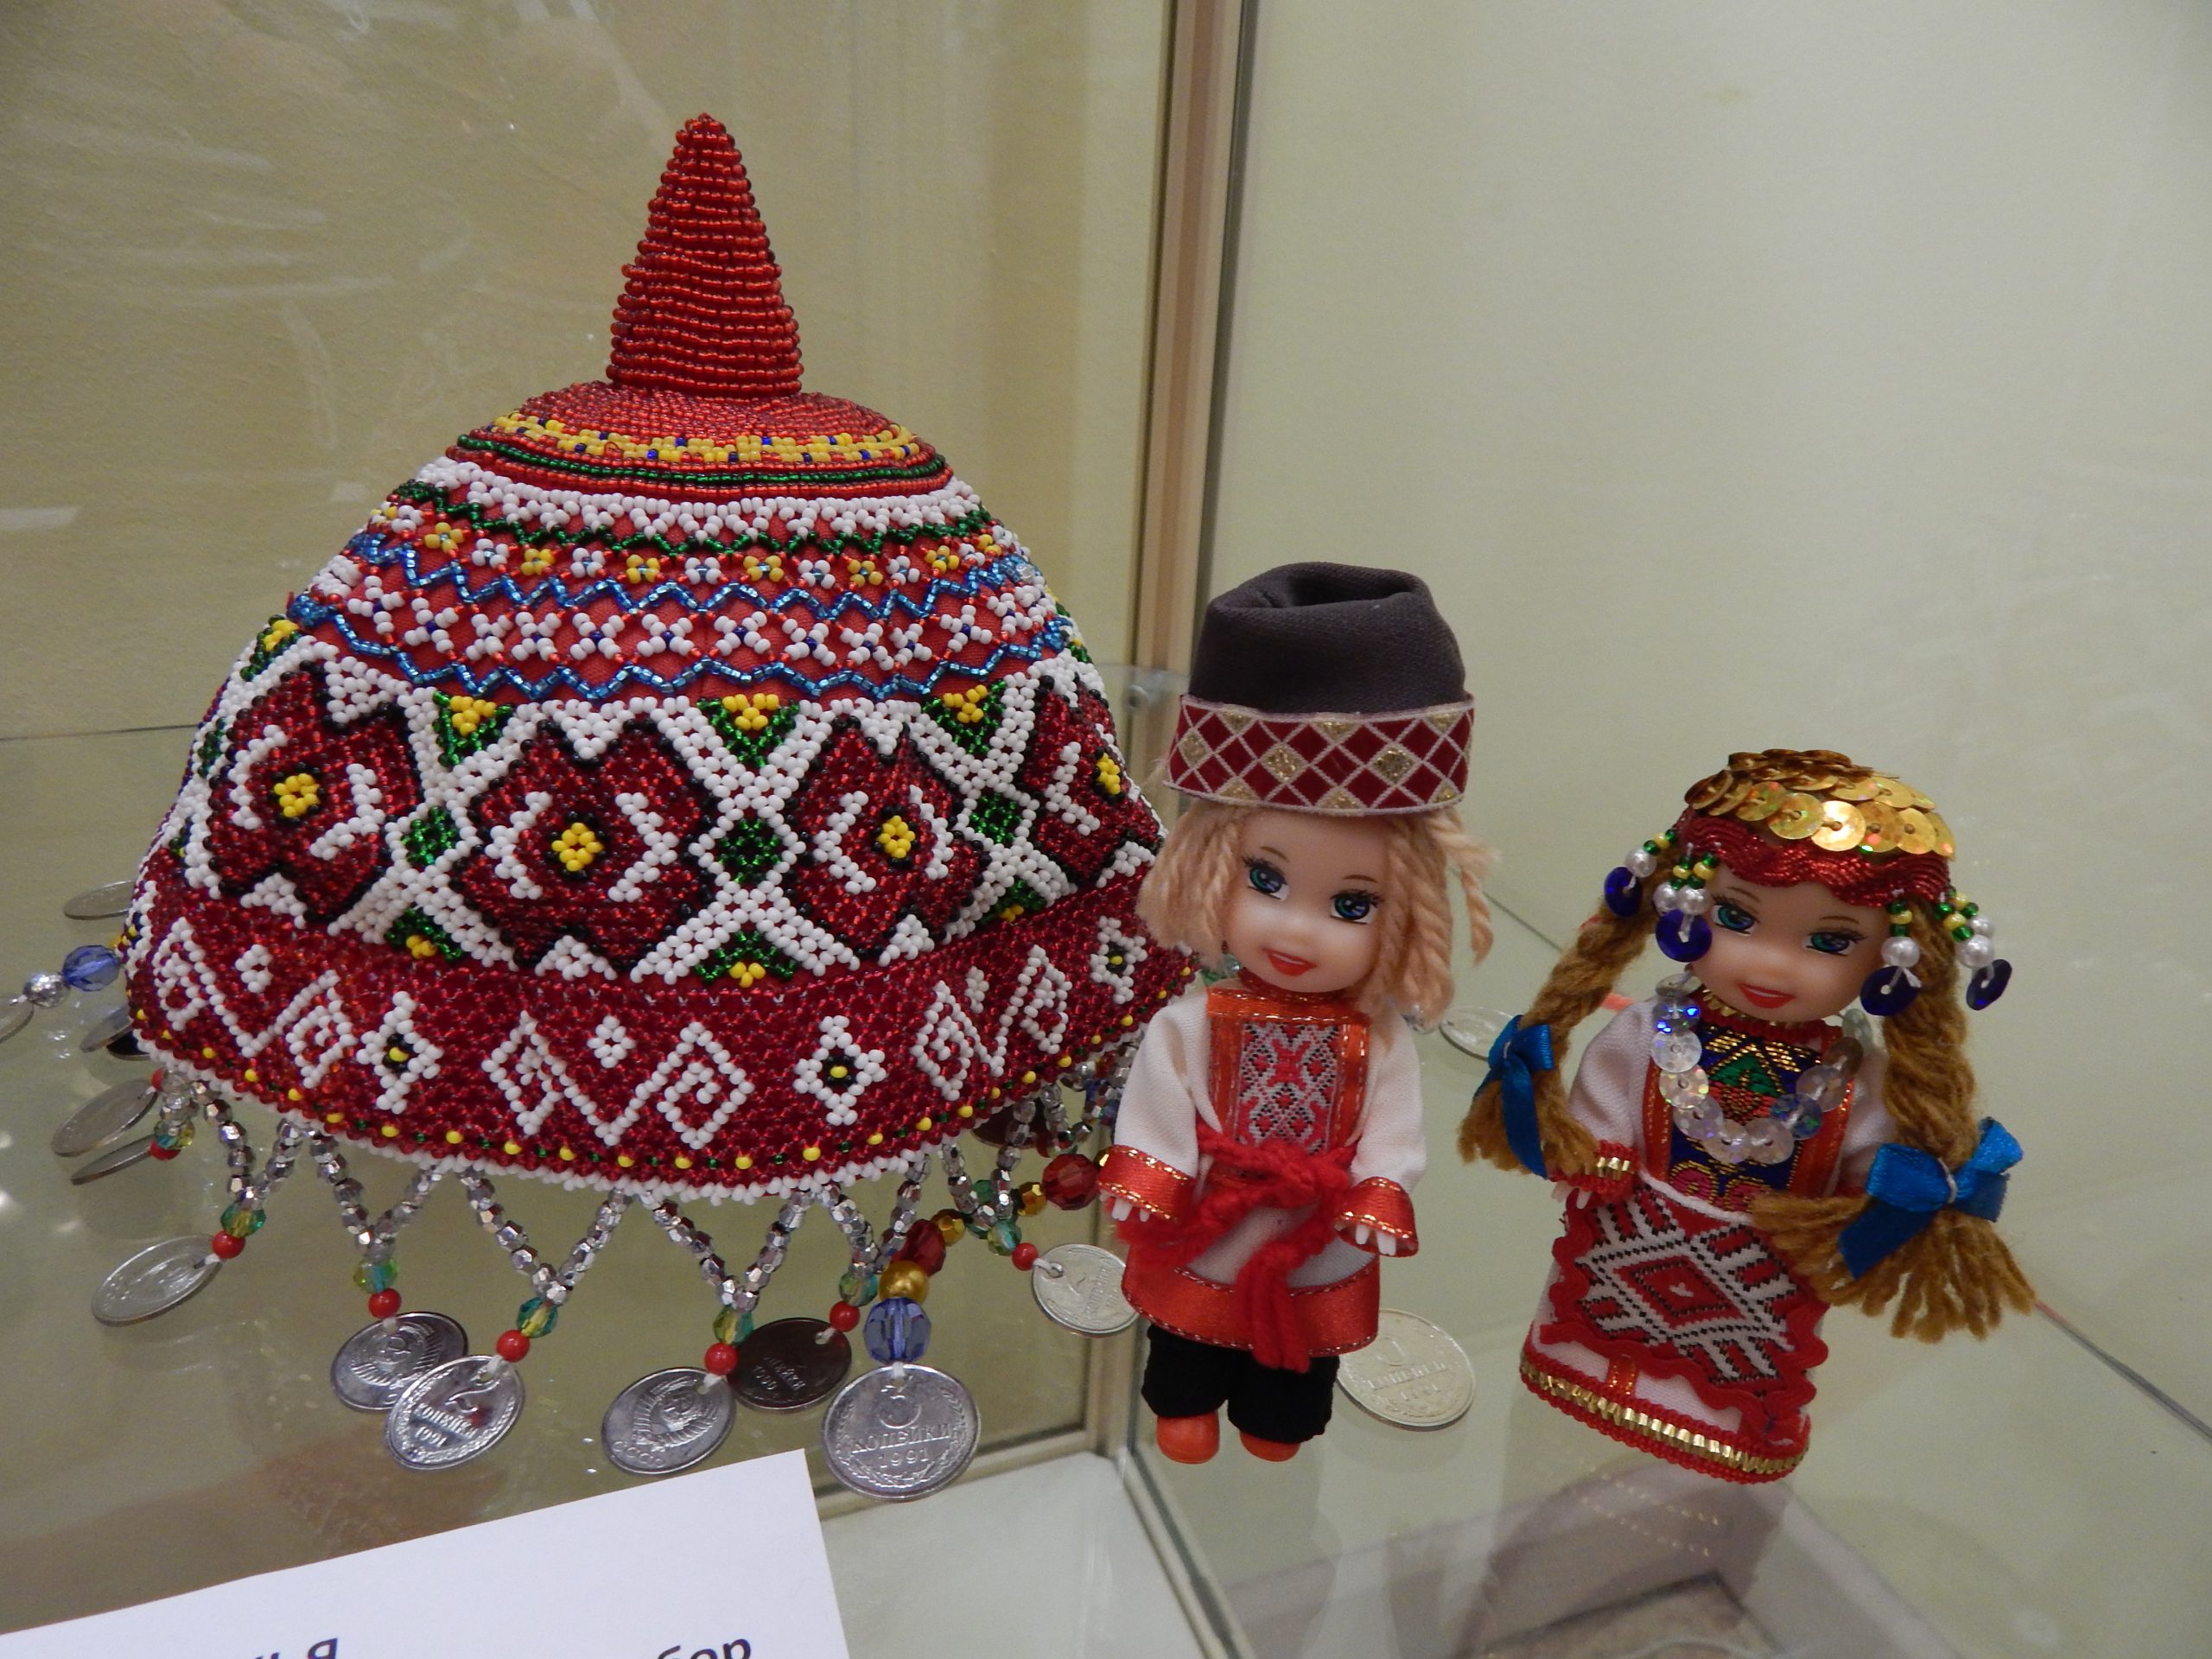 В ДК «Заря» прошла выставка тюркских головных уборов